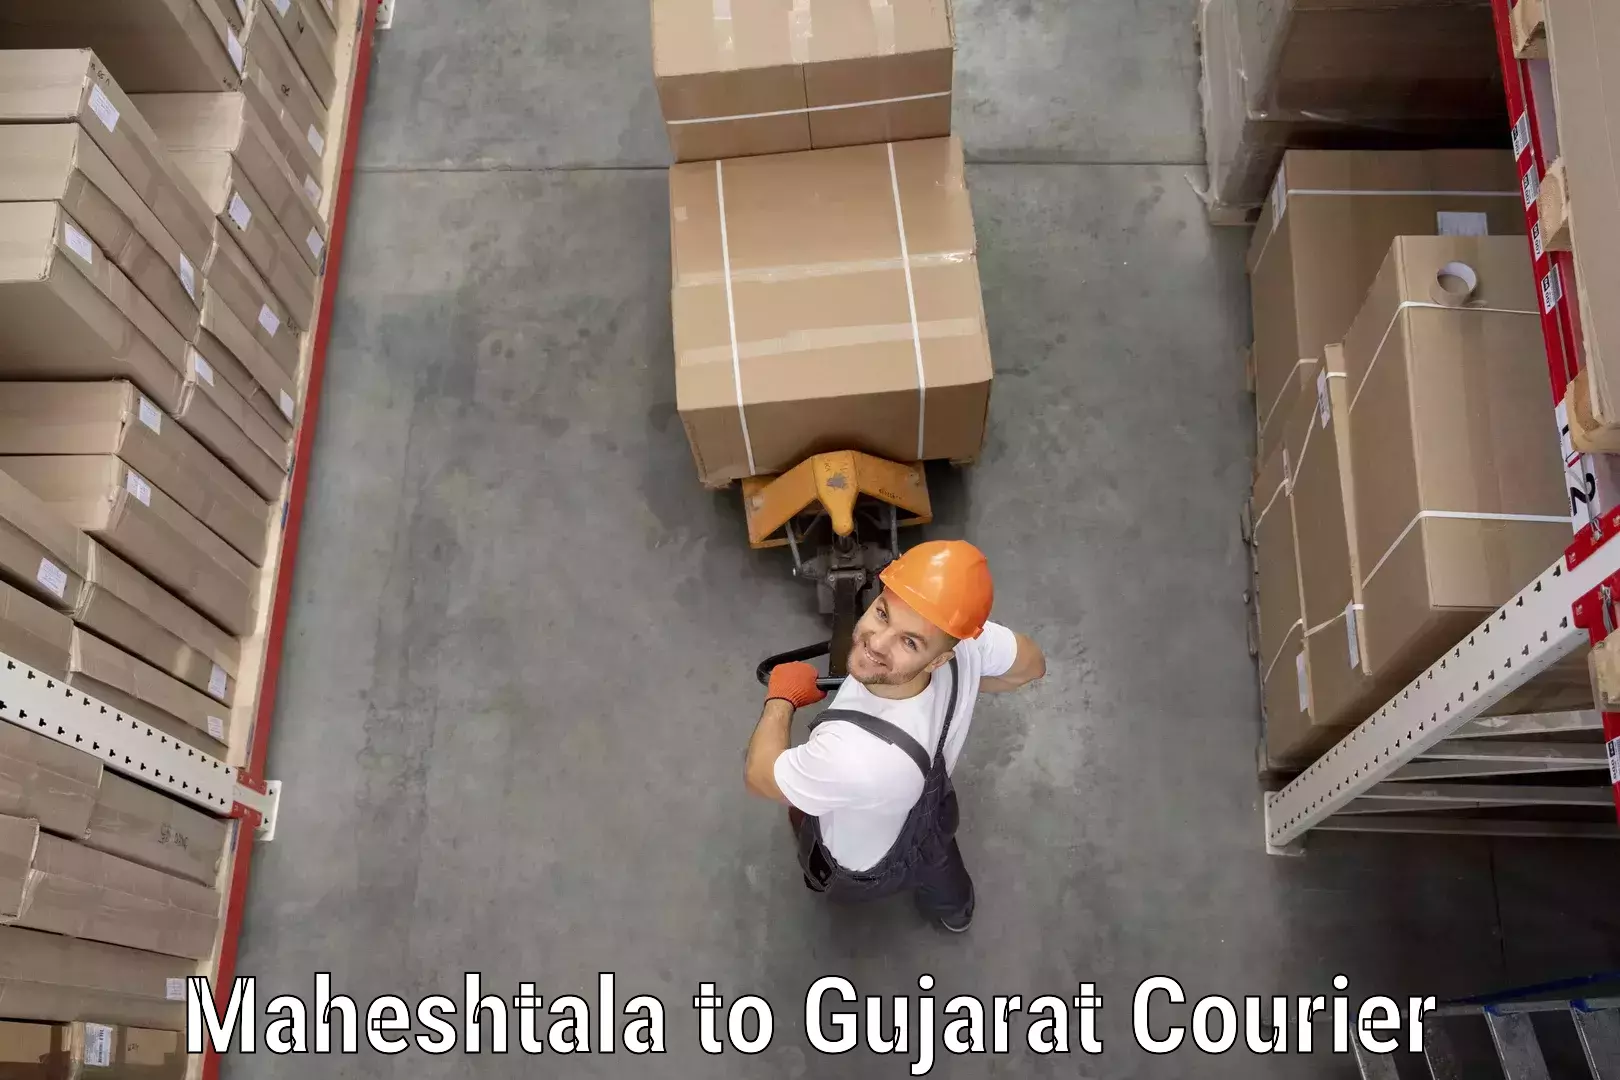 Professional courier handling Maheshtala to Vansda